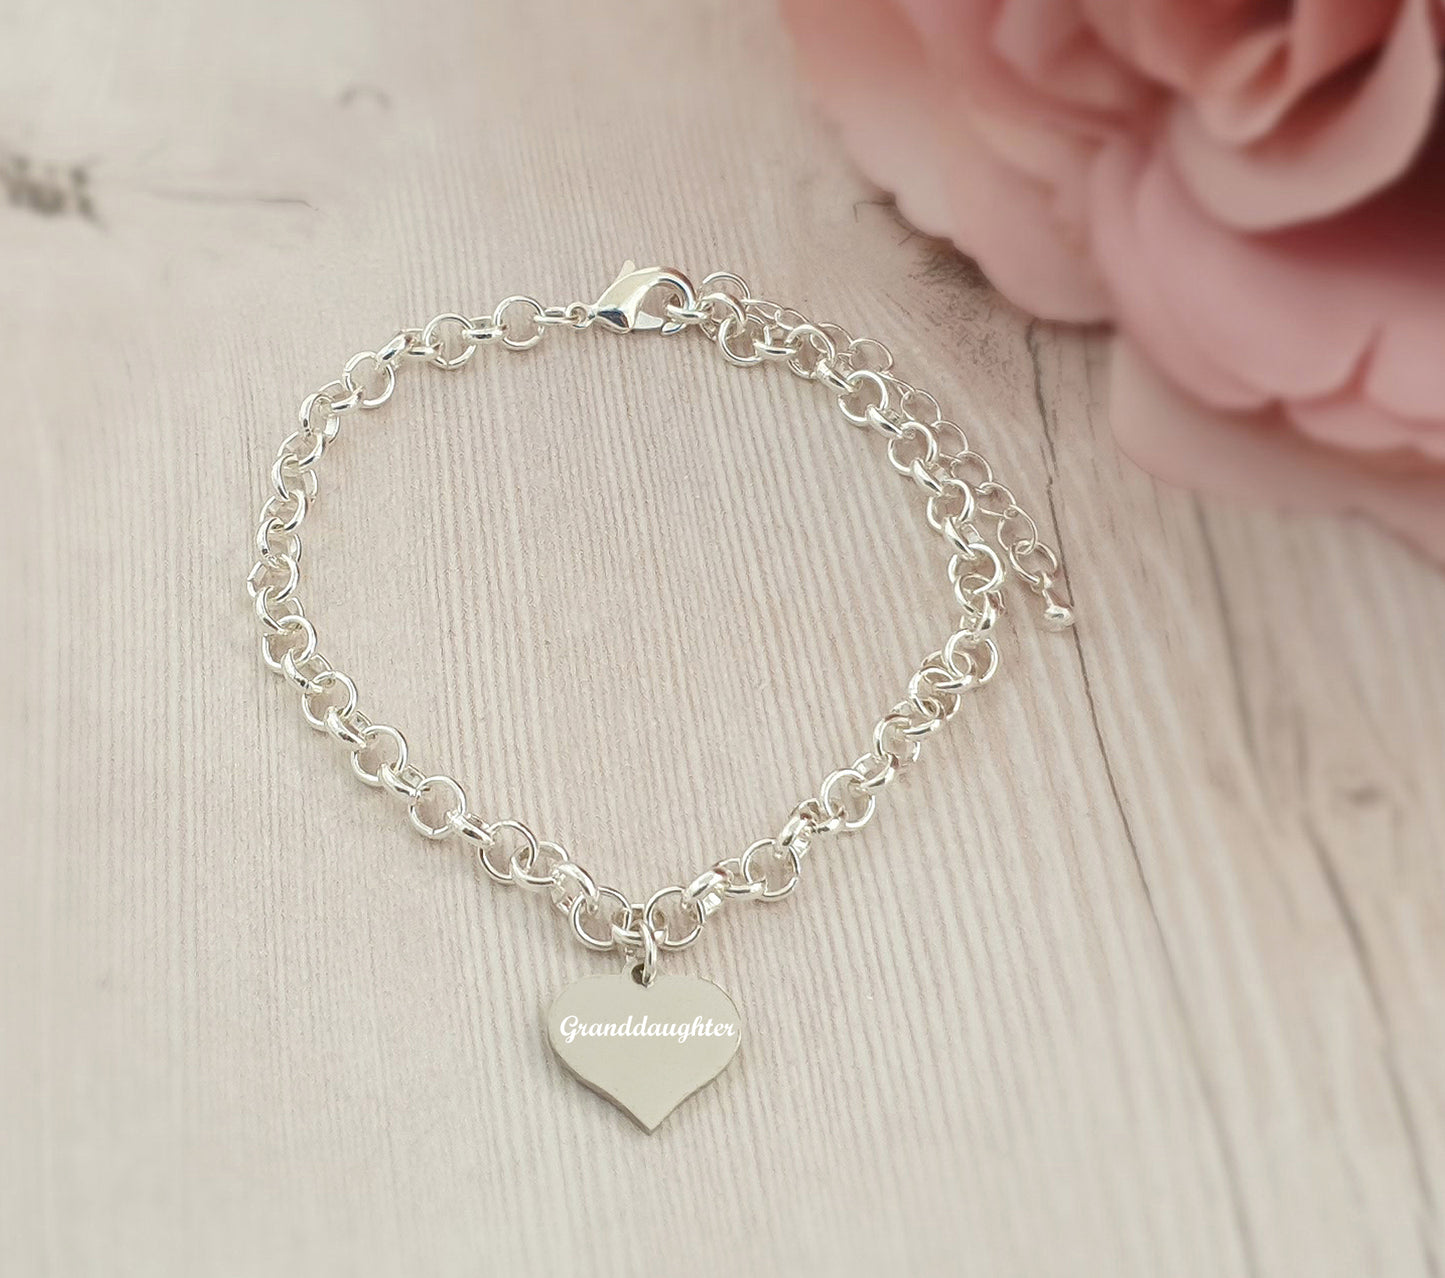 Granddaughter Engraved Heart Charm Link Bracelet, Gift for Girl's and Women